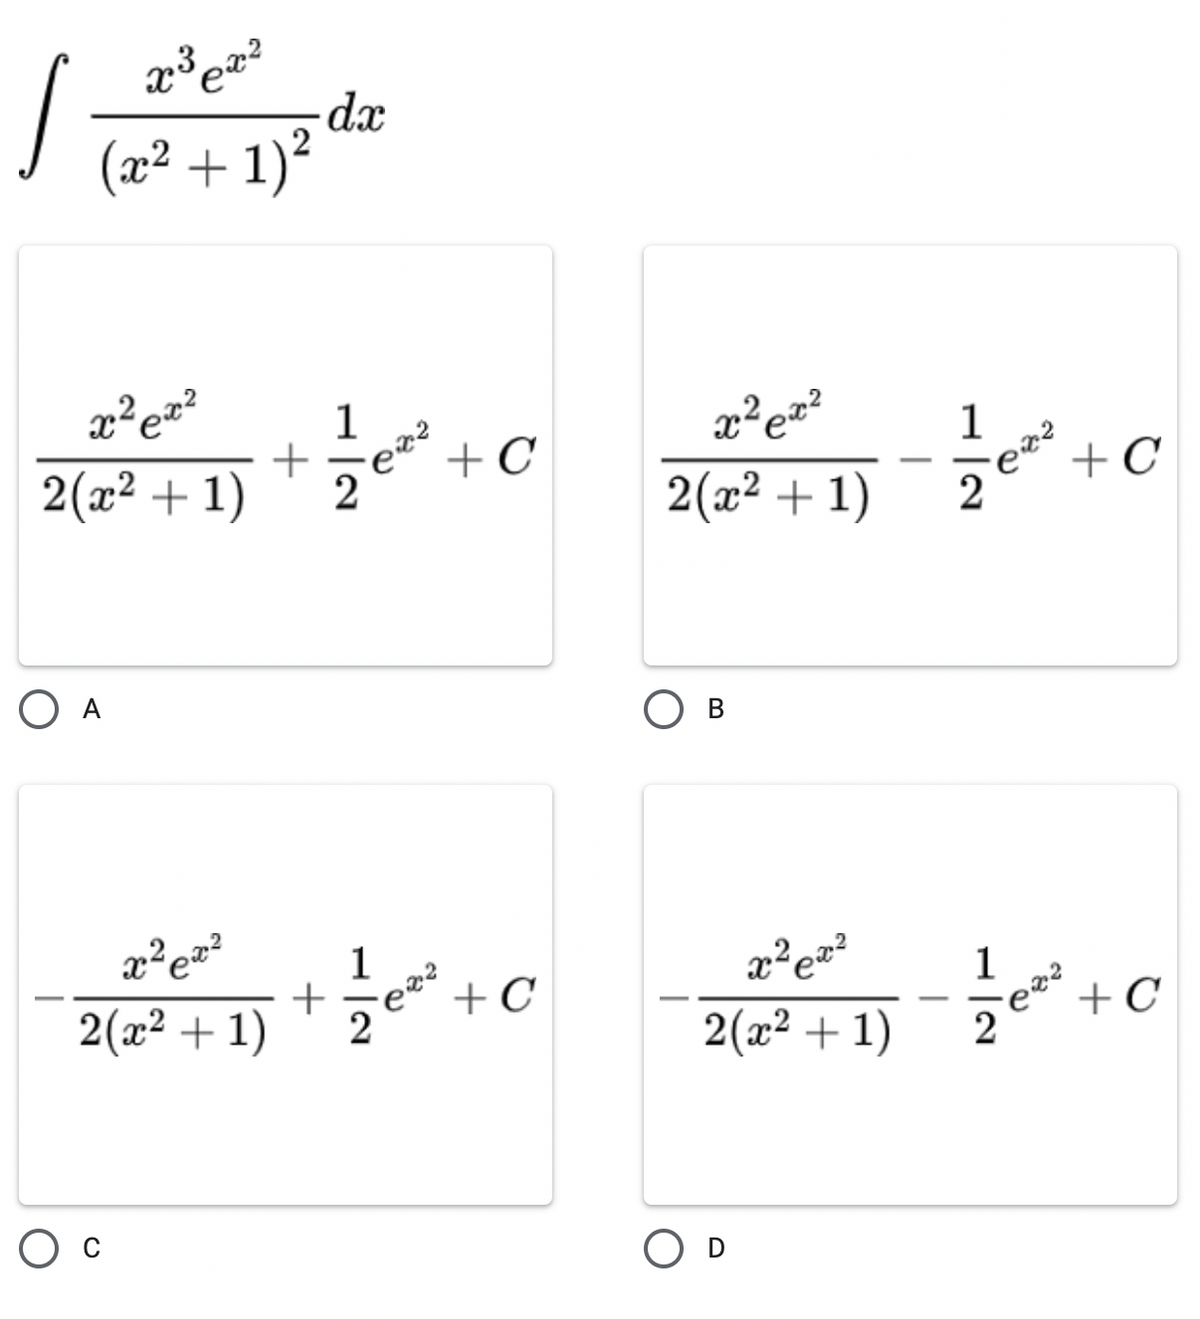 dx
(x² + 1)?
x²ez?
+ C
2(x² + 1)
2(x² + 1)
+C
O A
В
1
+C
x²e=?
2(x2 + 1)
2(a* + 1) - 2* + ©
O D
+
